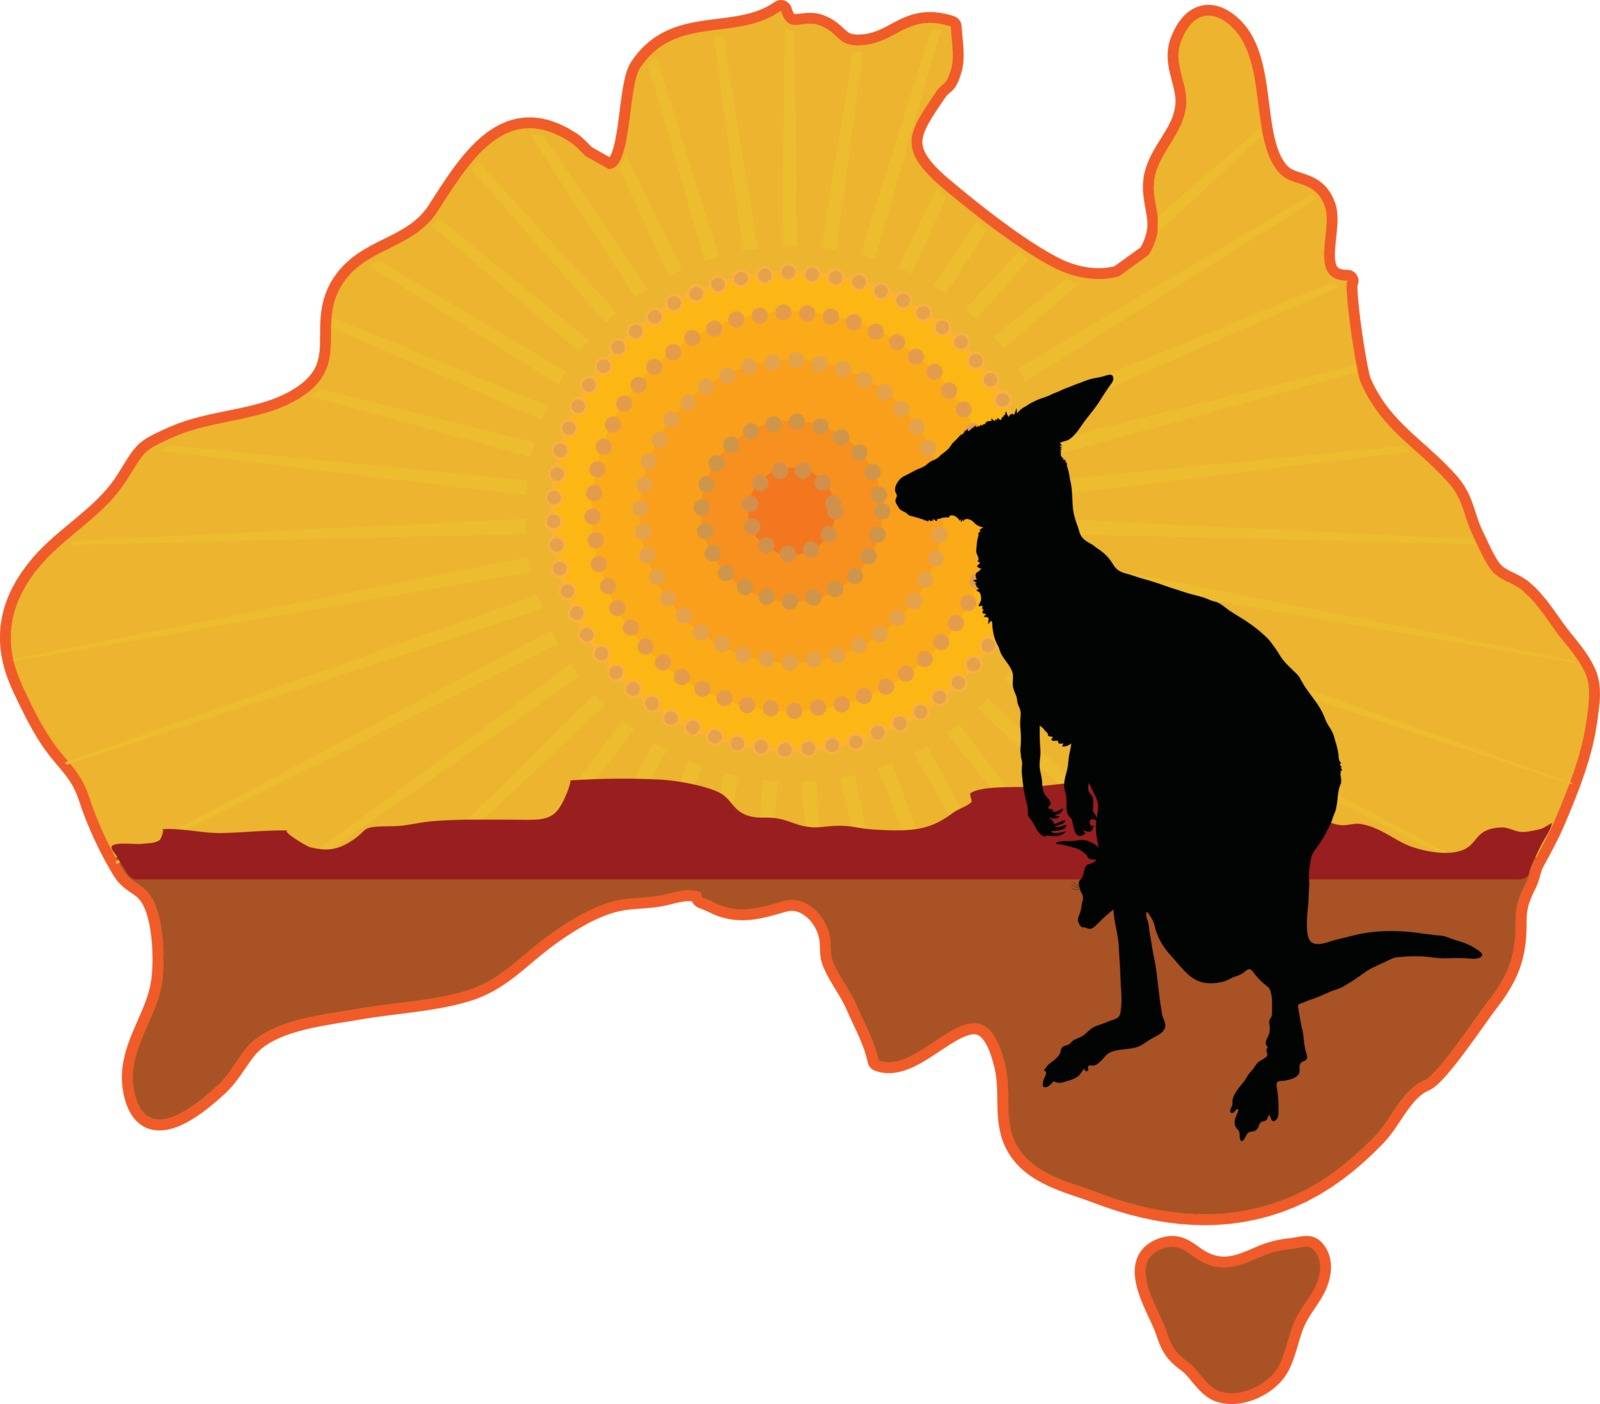 эмблема австралии